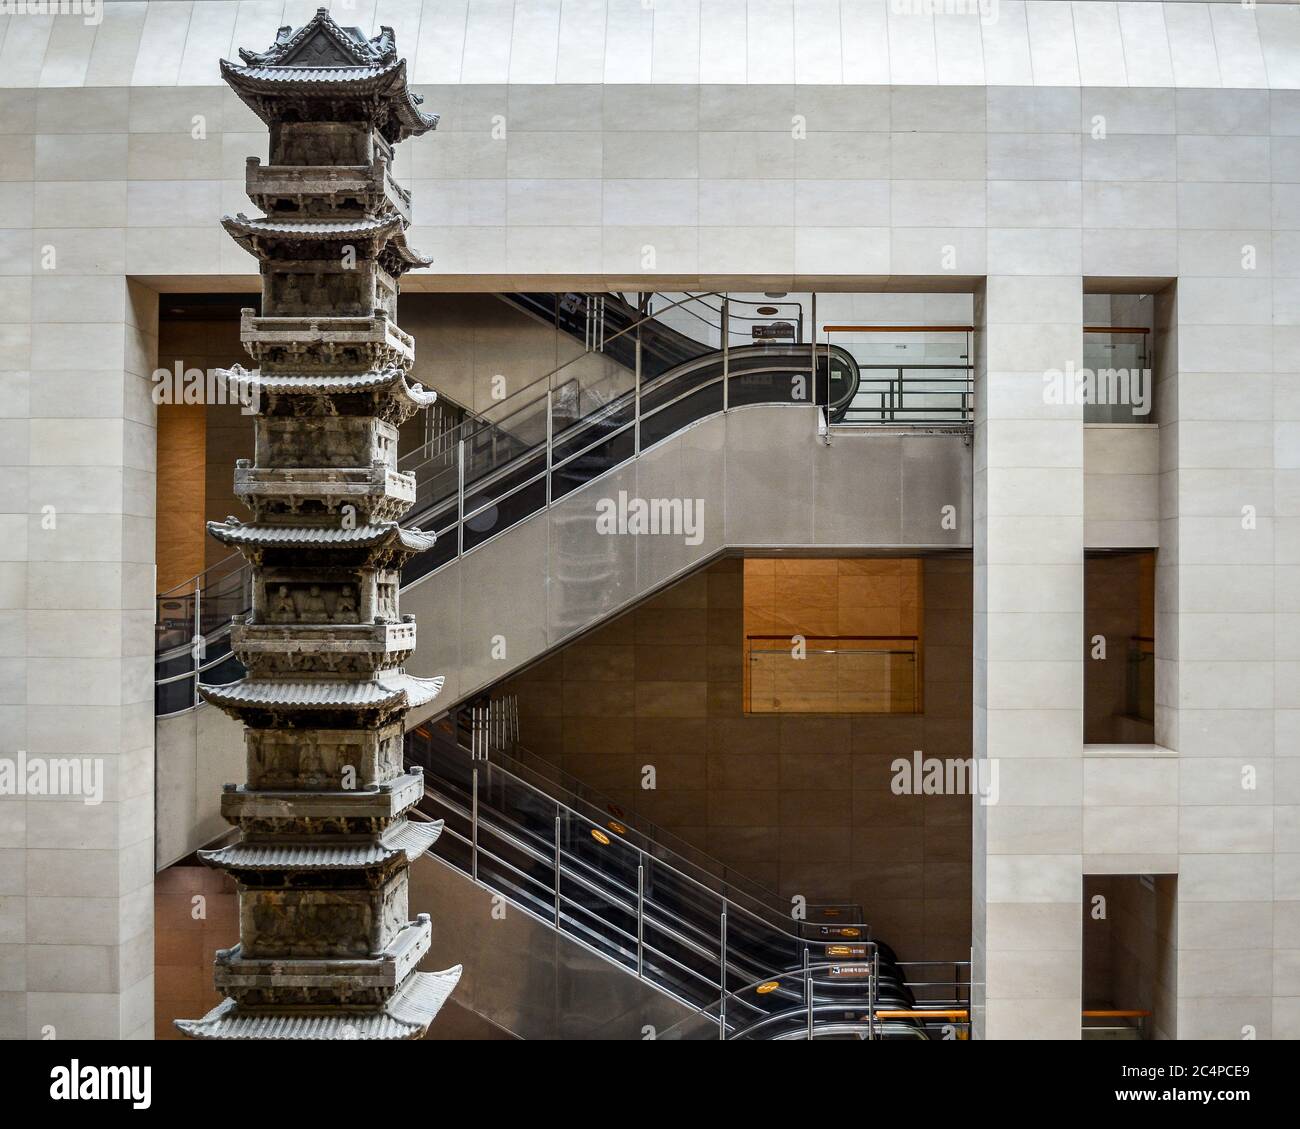 Séoul, Corée du Sud - pagode du Temple Kyongchonsa de 10 étages dans le couloir principal du Musée national de Corée à Yongsan. Trésor national. Escalier roulant. Banque D'Images